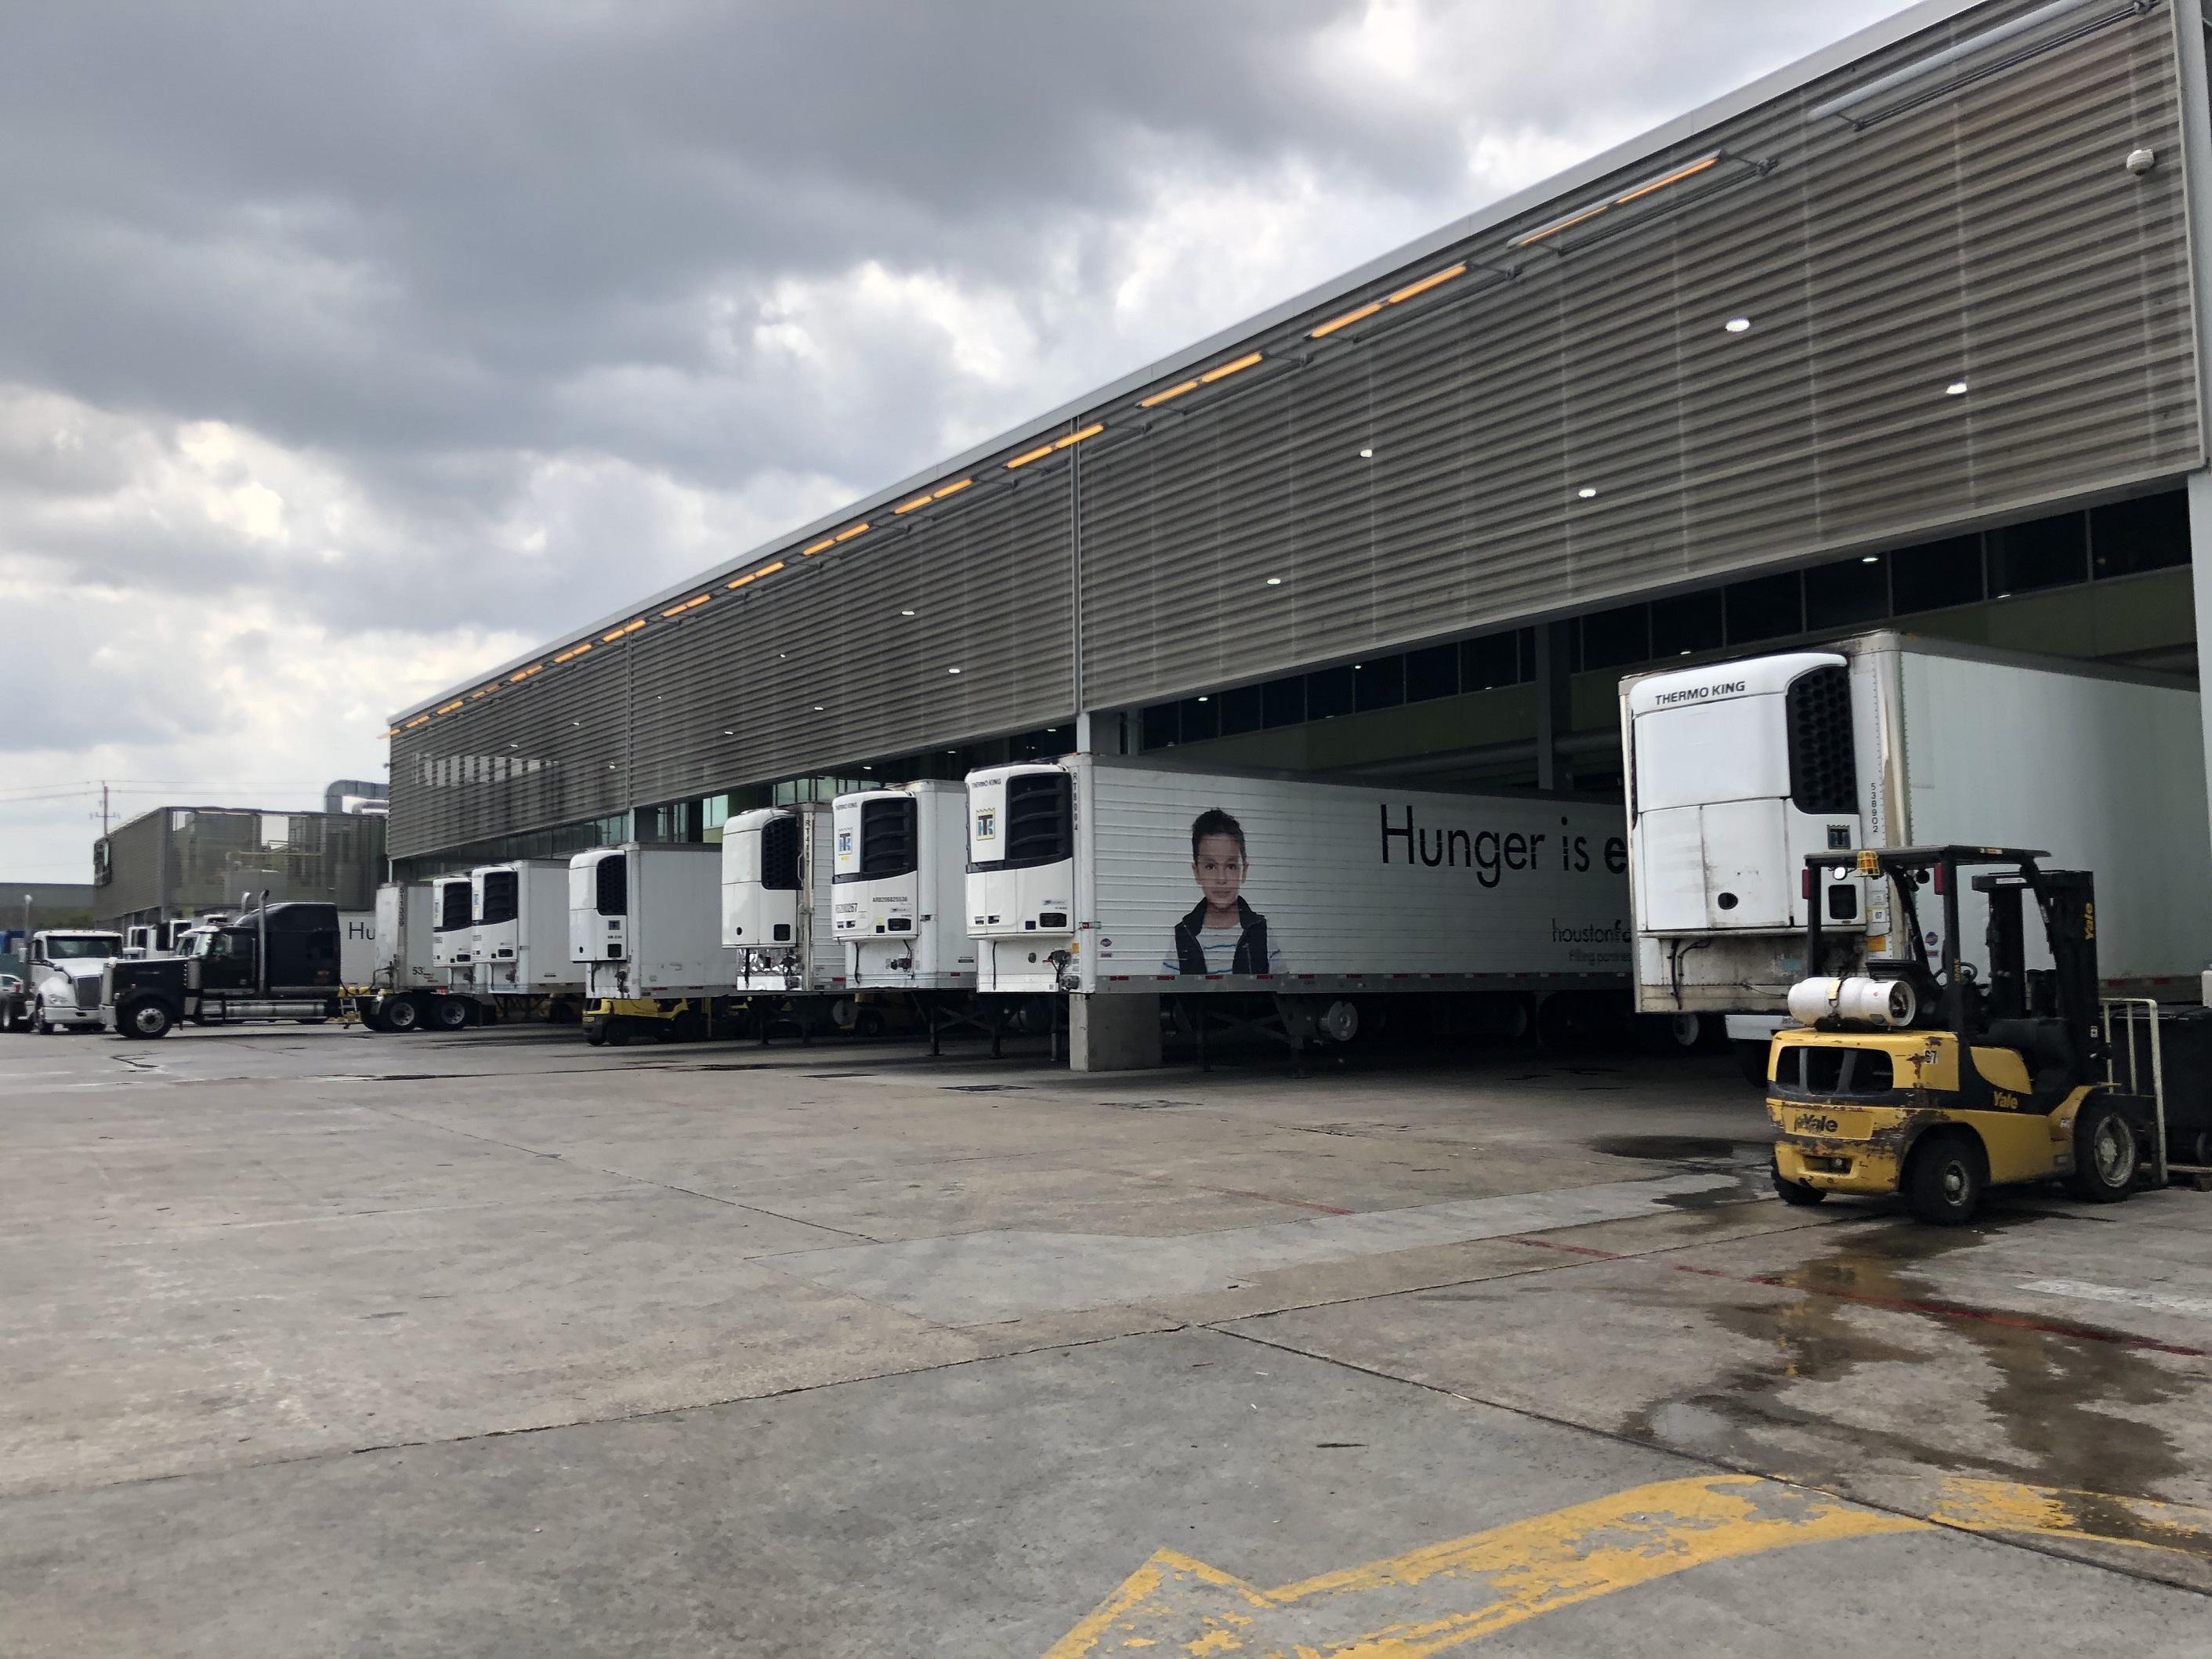 Les camions s'approvisionnent à la banque alimentaire de Houston. [RTS - Raphaël Grand]